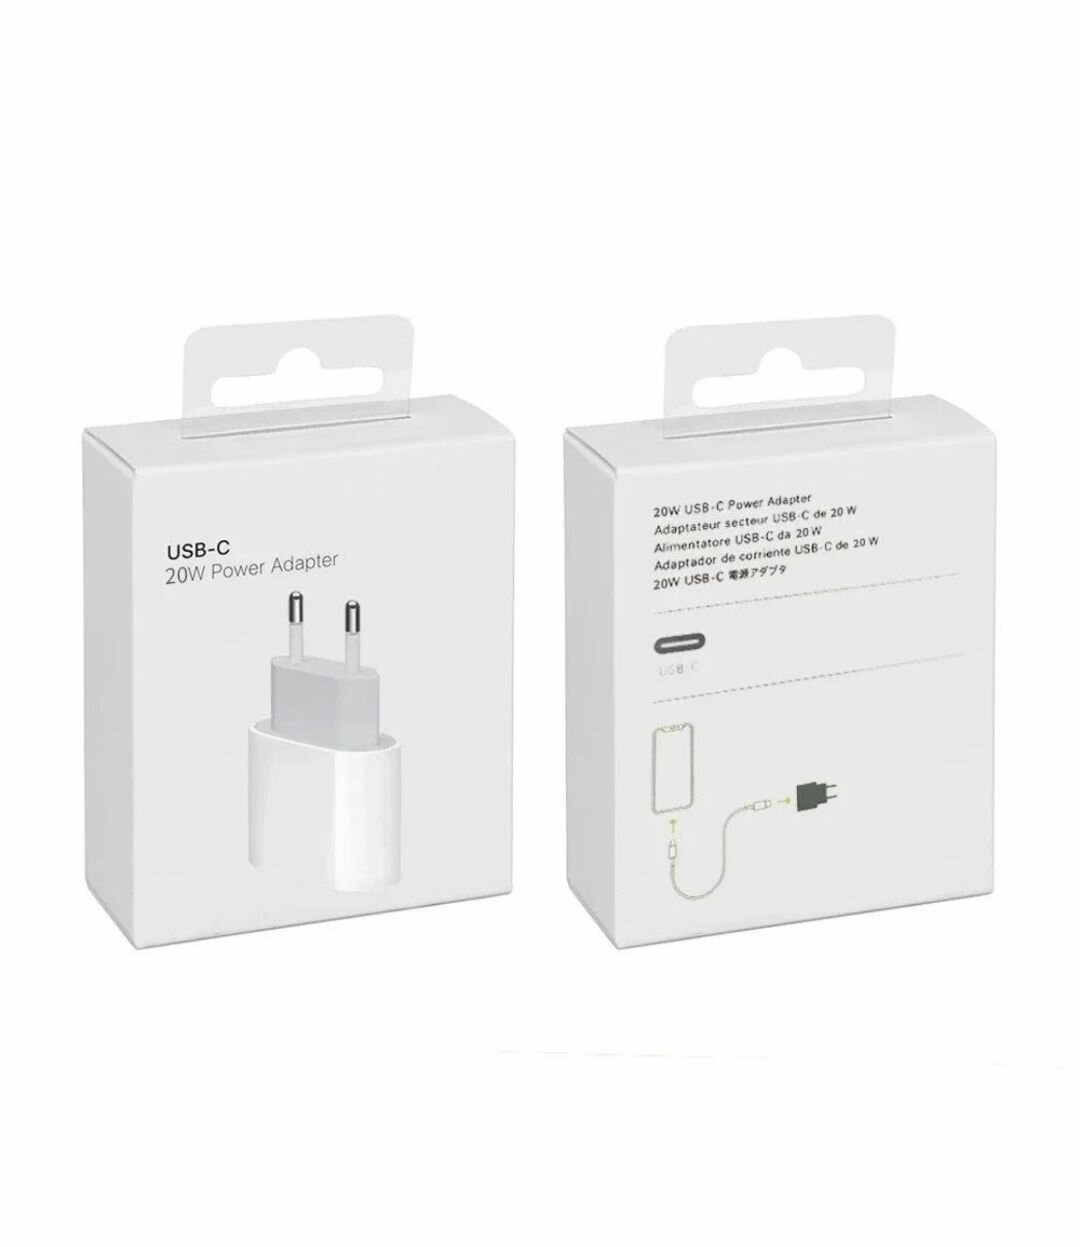 Сетевое зарядное устройство адаптер питания USB-C 20Вт (MHJE3ZM/A), Быстрая зарядка / Товар уцененный